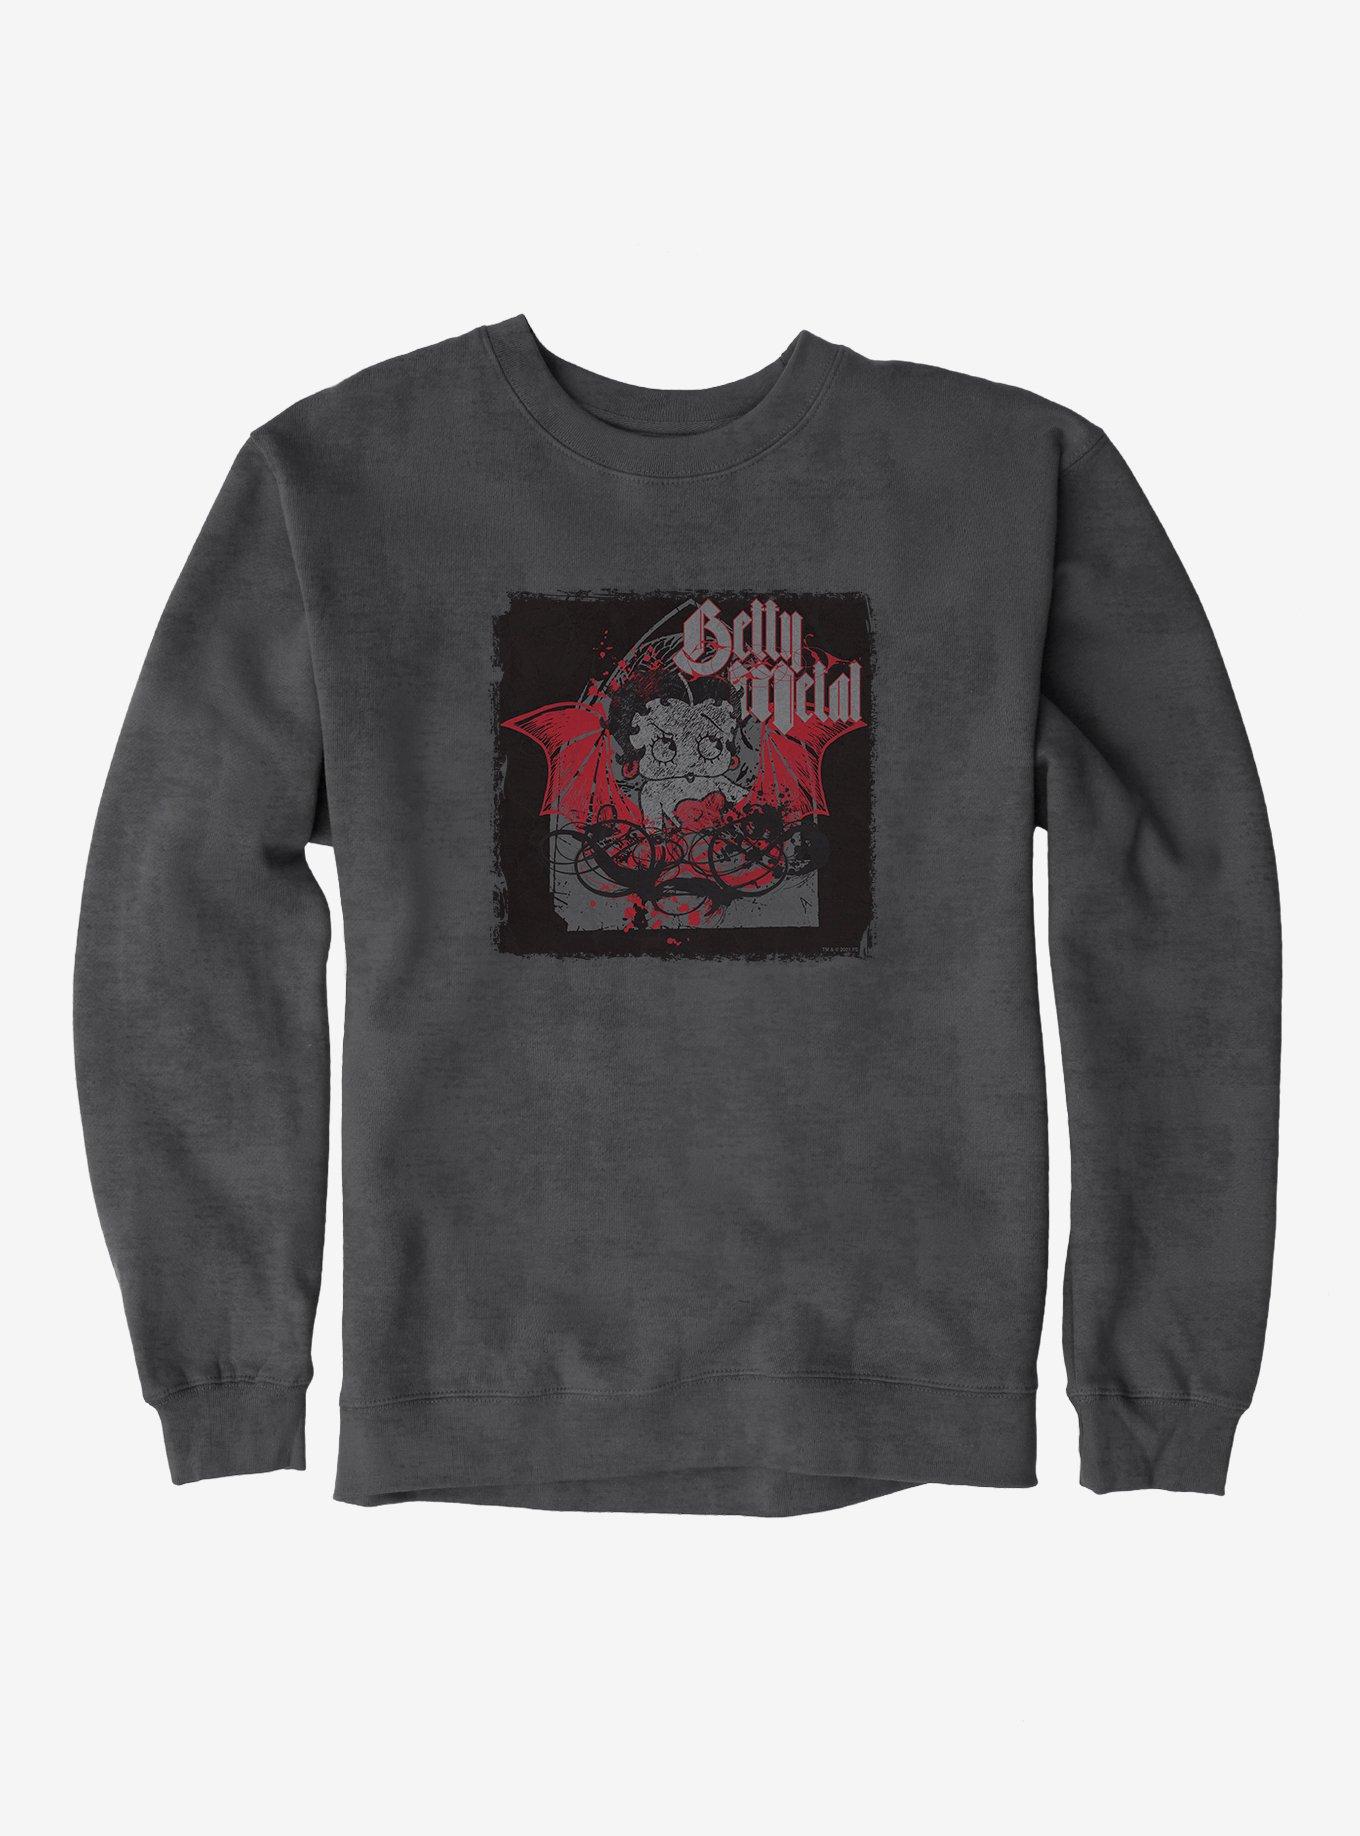 Betty Boop Dark Metal Angel Sweatshirt